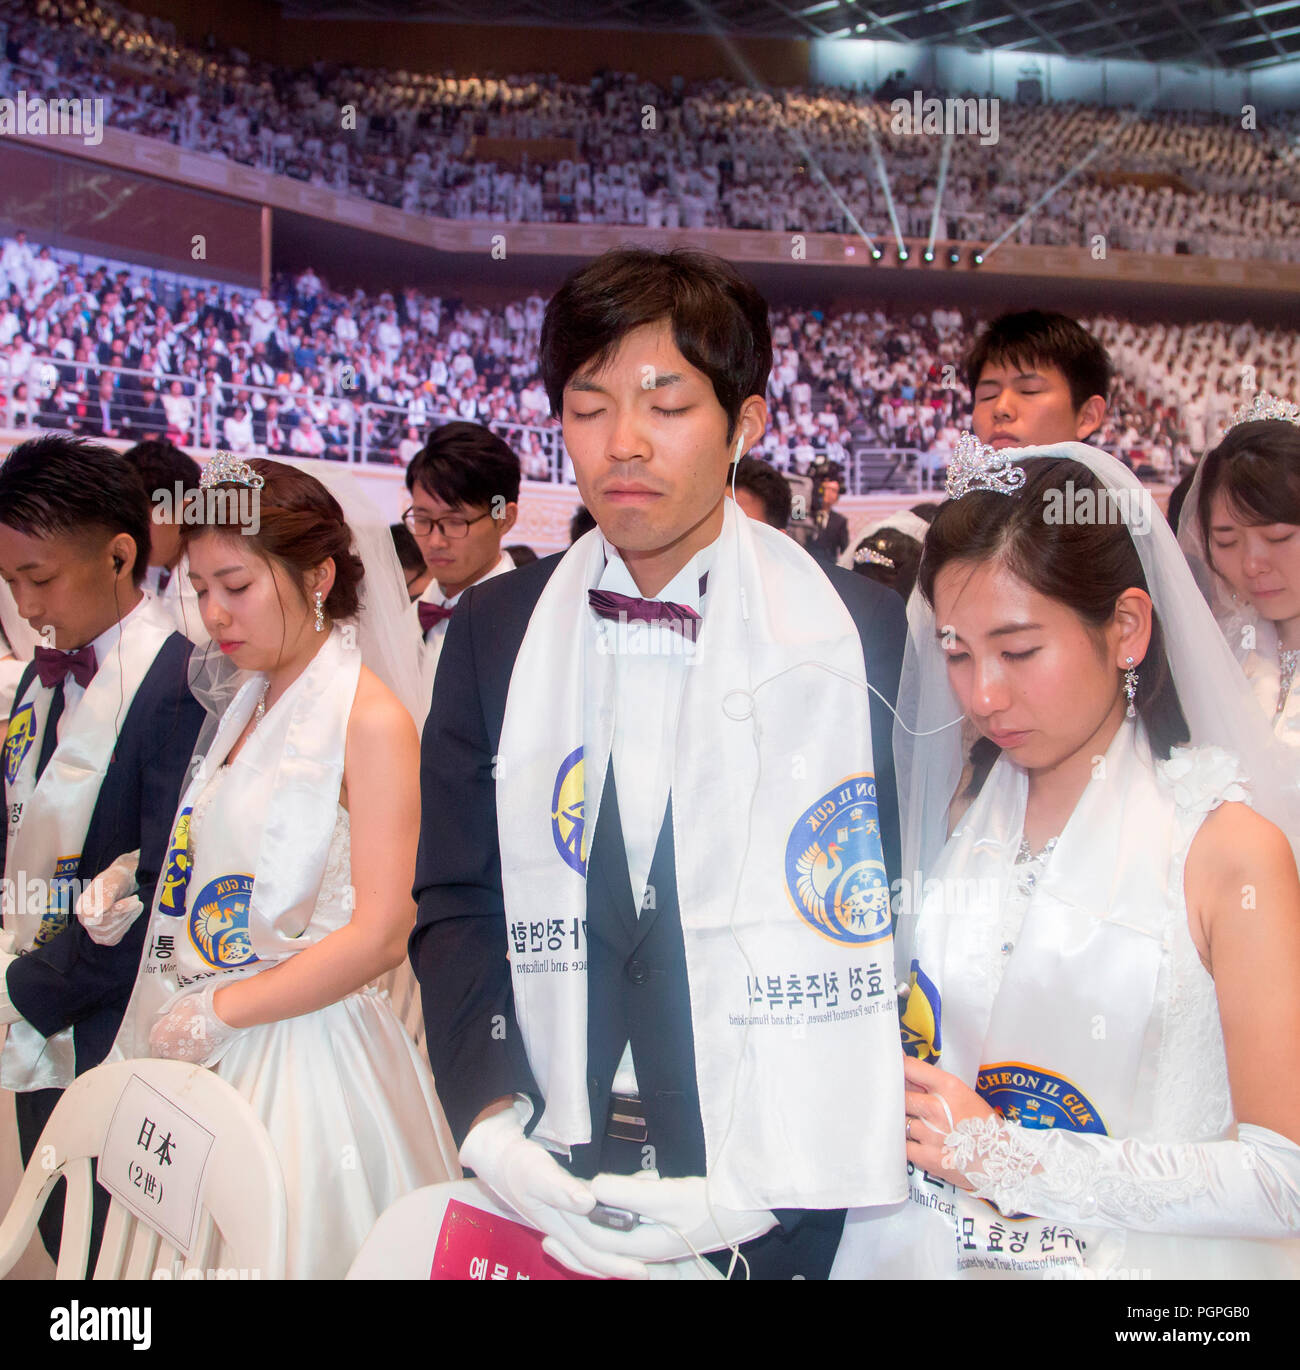 Seúl, Corea del Sur. El 27 de agosto de 2018. Boda masiva de la Iglesia de la unificación, Aug 27, 2018 : Parejas de Japón orar durante una ceremonia de boda masiva de la Iglesia de la unificación en el Centro Mundial de Paz CheongShim en Gapyeong, a unos 60 km (37 millas) al noreste de Seúl, Corea del Sur. Cuatro mil parejas recién casados de todo el mundo participaron en la misa boda el lunes, el cual fue organizado por Hak Ja Han Moon, esposa del Reverendo Sun Myung Moon. Crédito: Aflo Co., Ltd./Alamy Live News Foto de stock